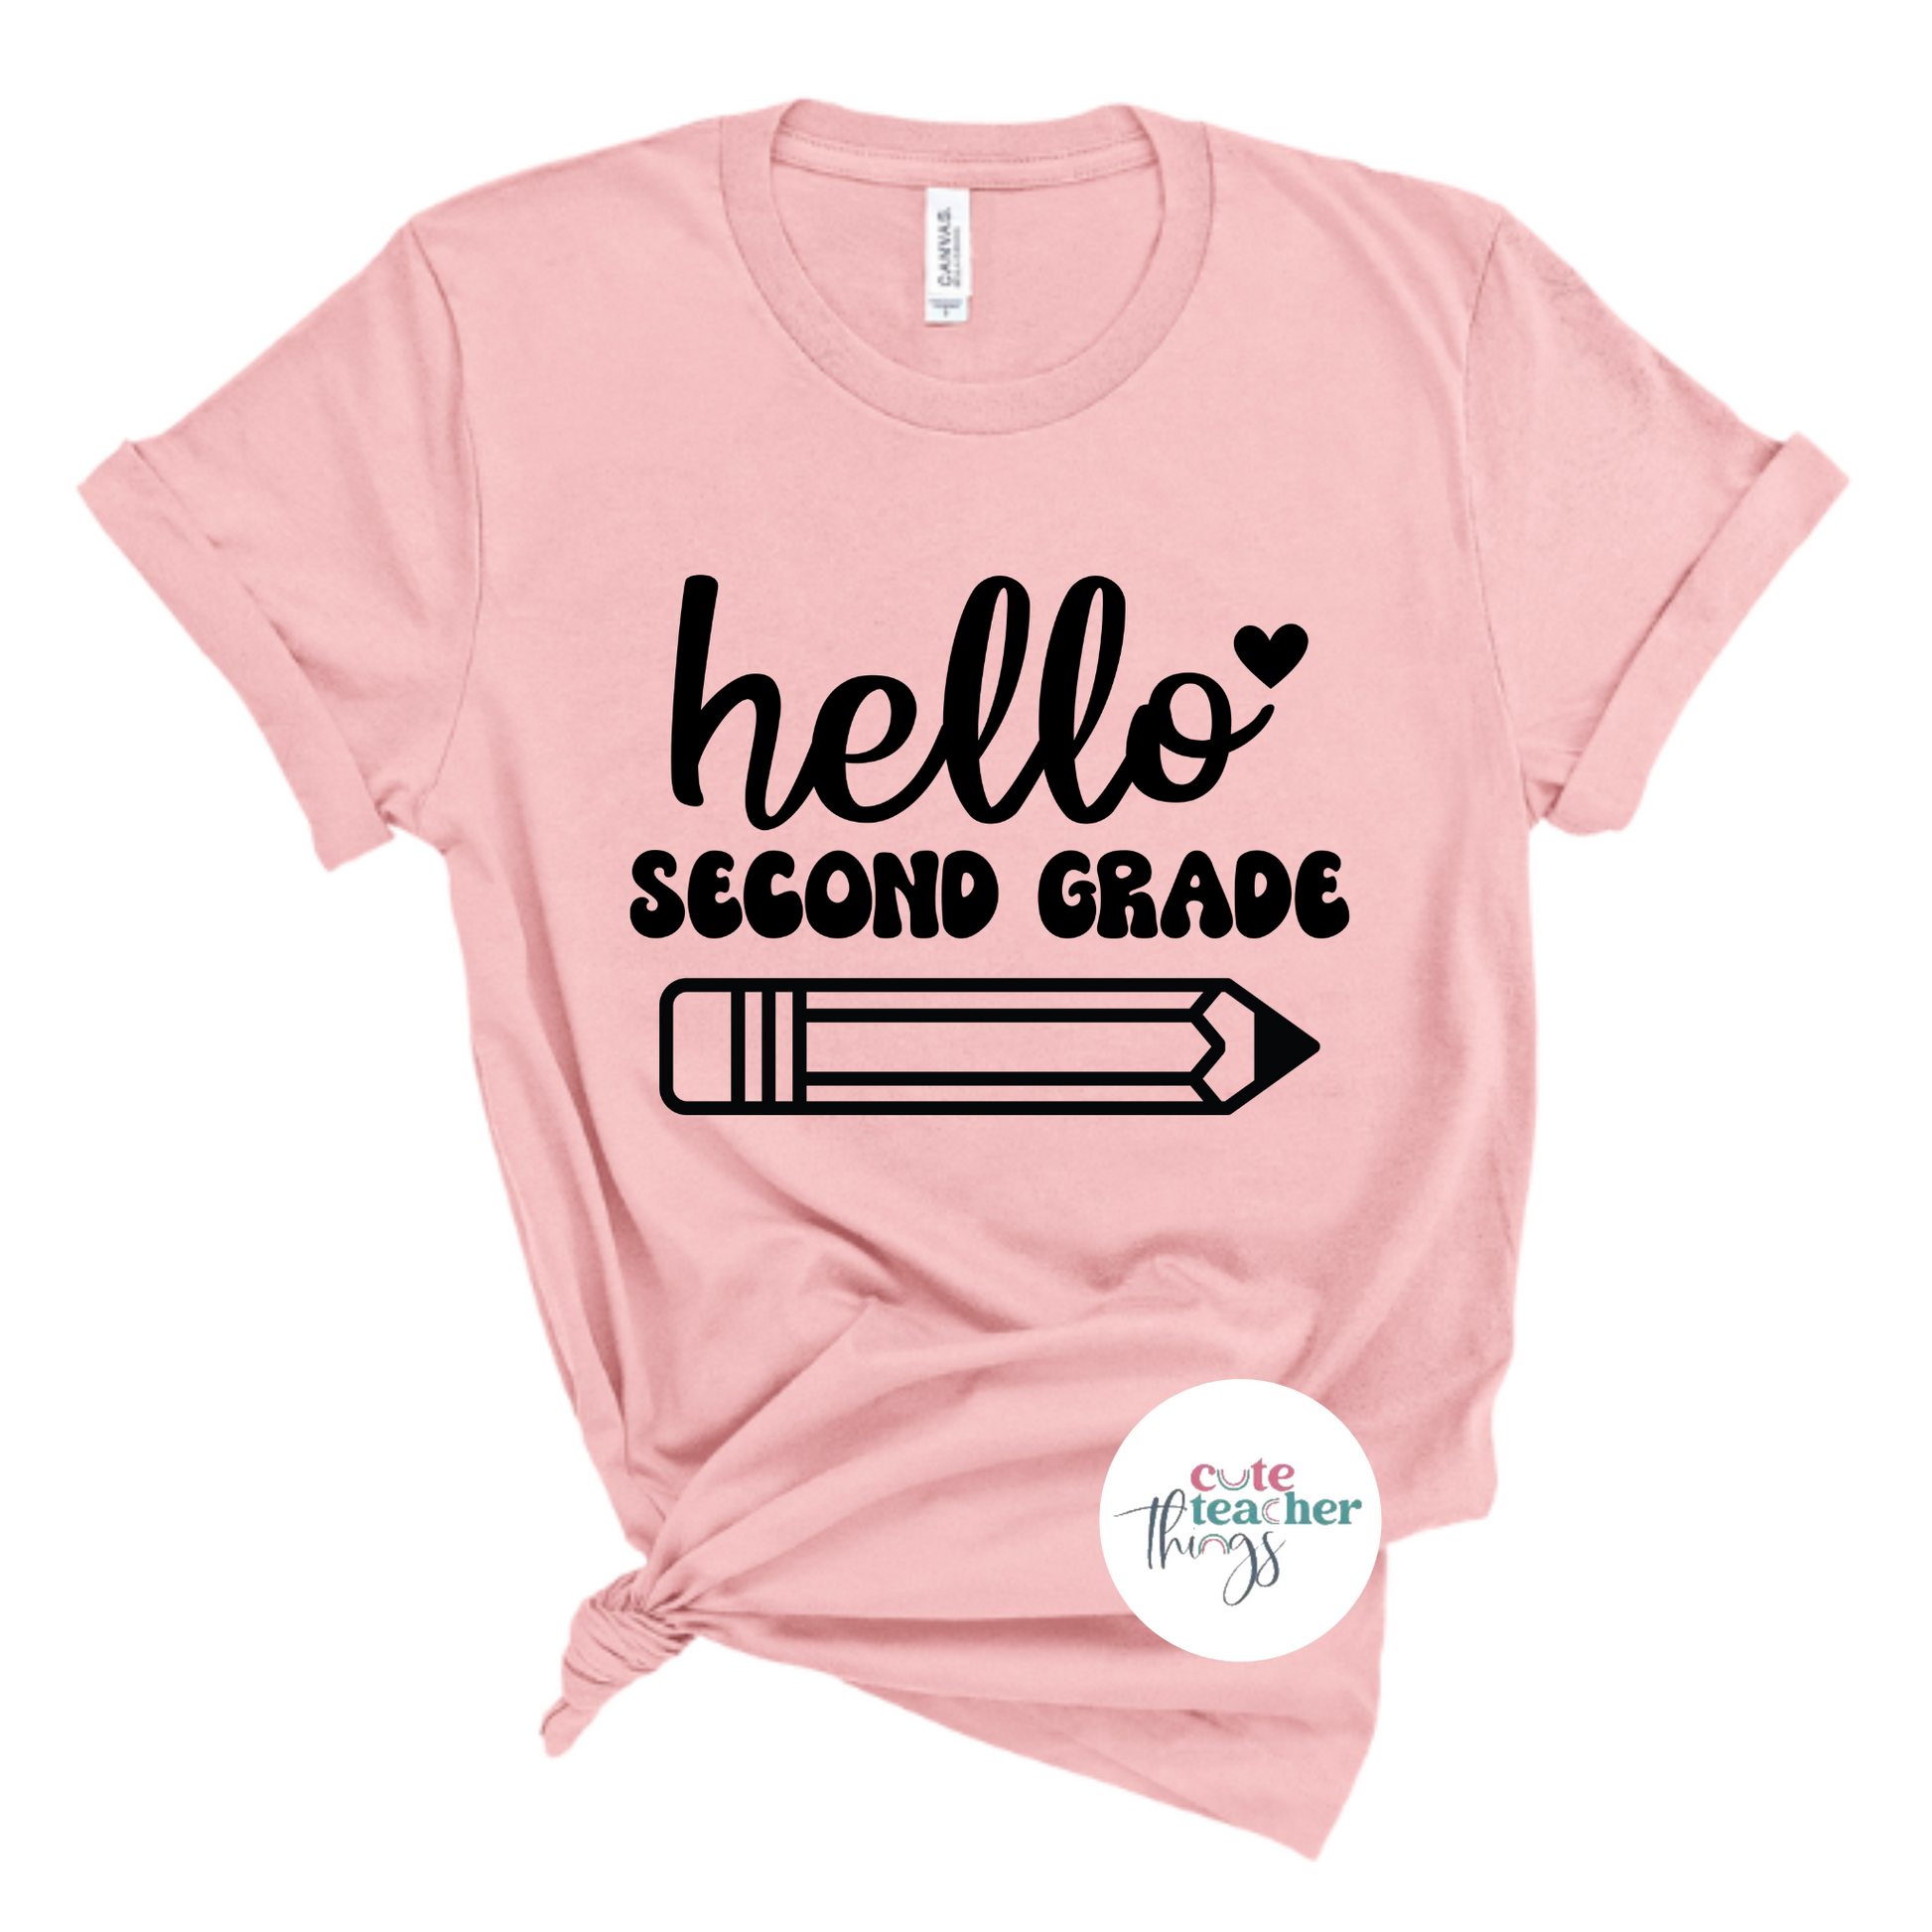 teachers day outfit, for second grade teachers, proud second grade teacher t-shirt